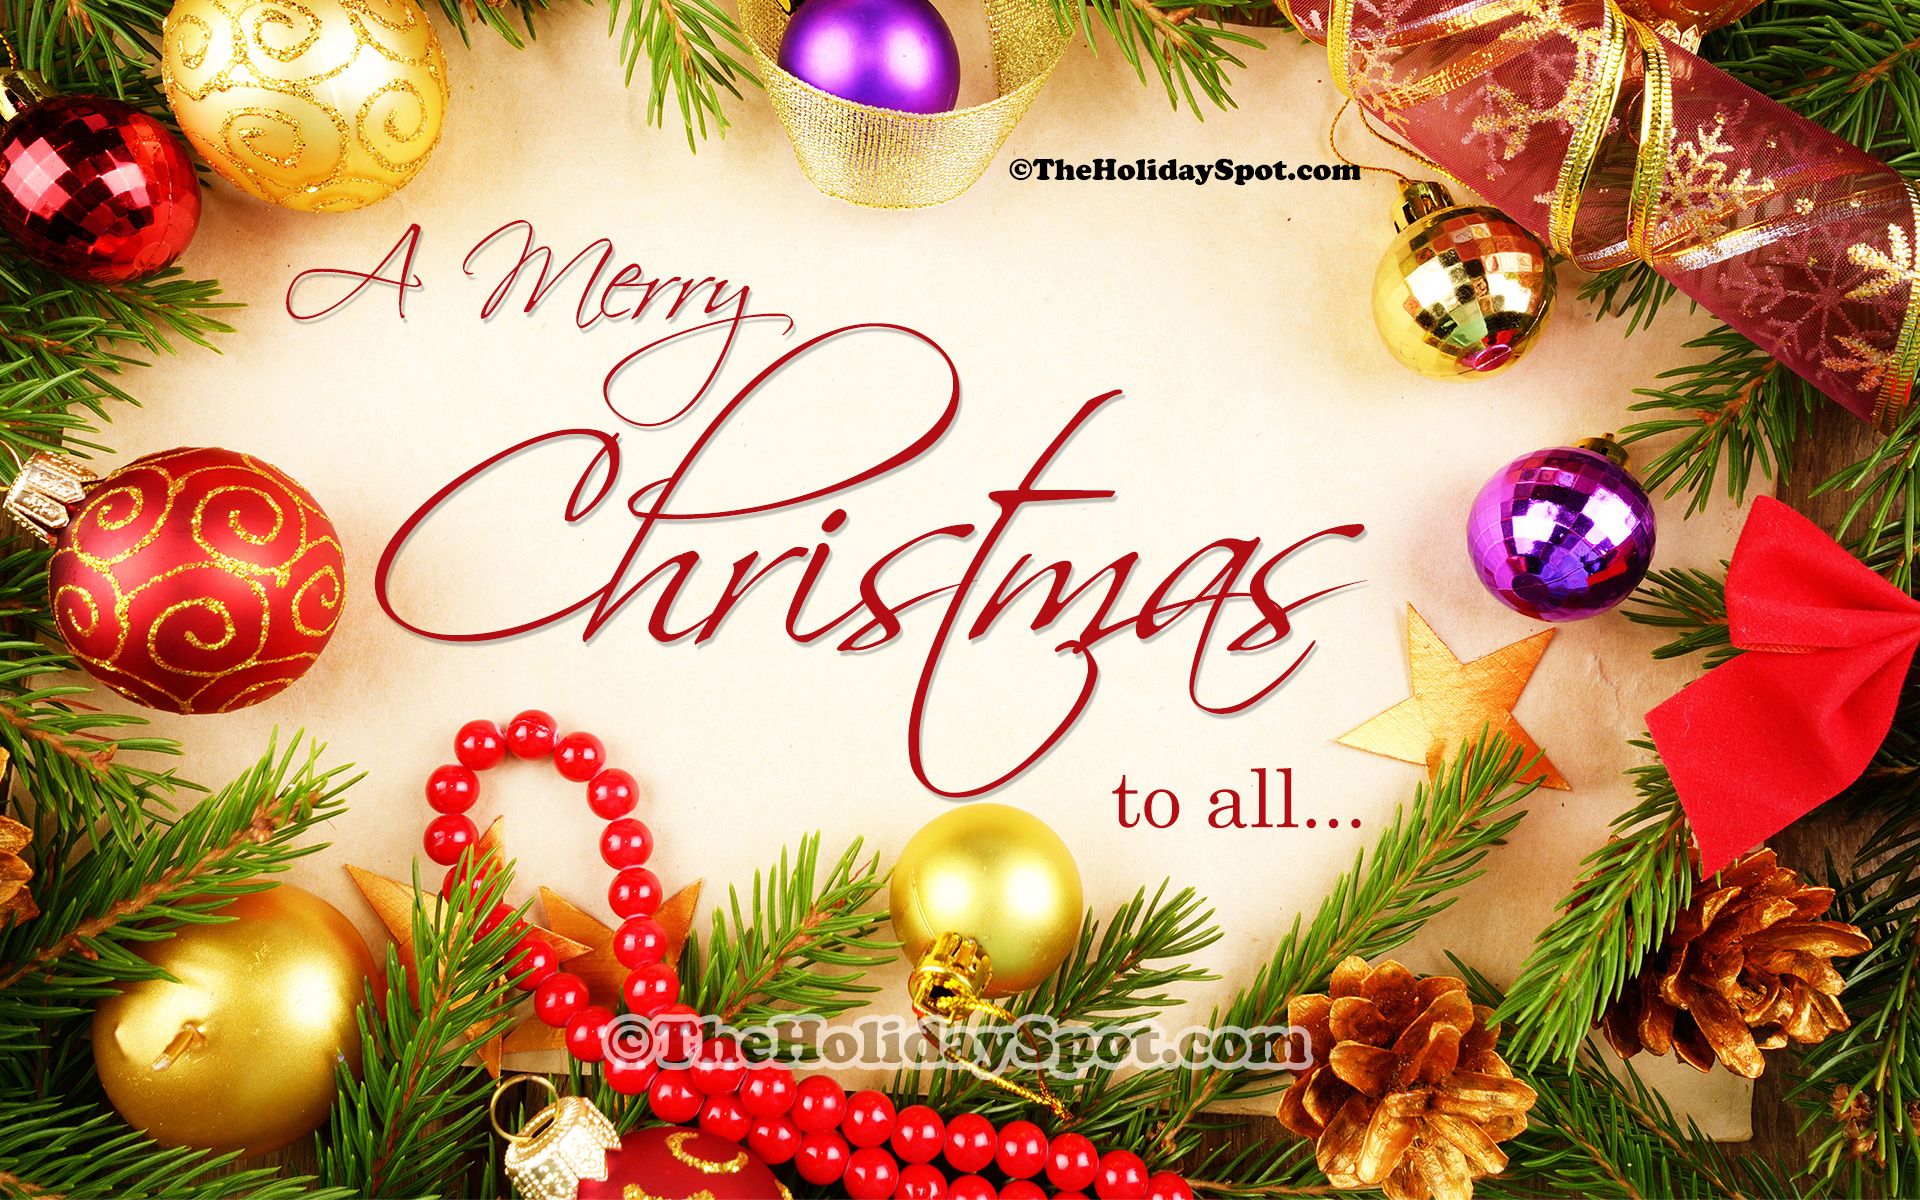 クリスマス願い壁紙,クリスマス・イブ,テキスト,クリスマス,挨拶,クリスマスの飾り